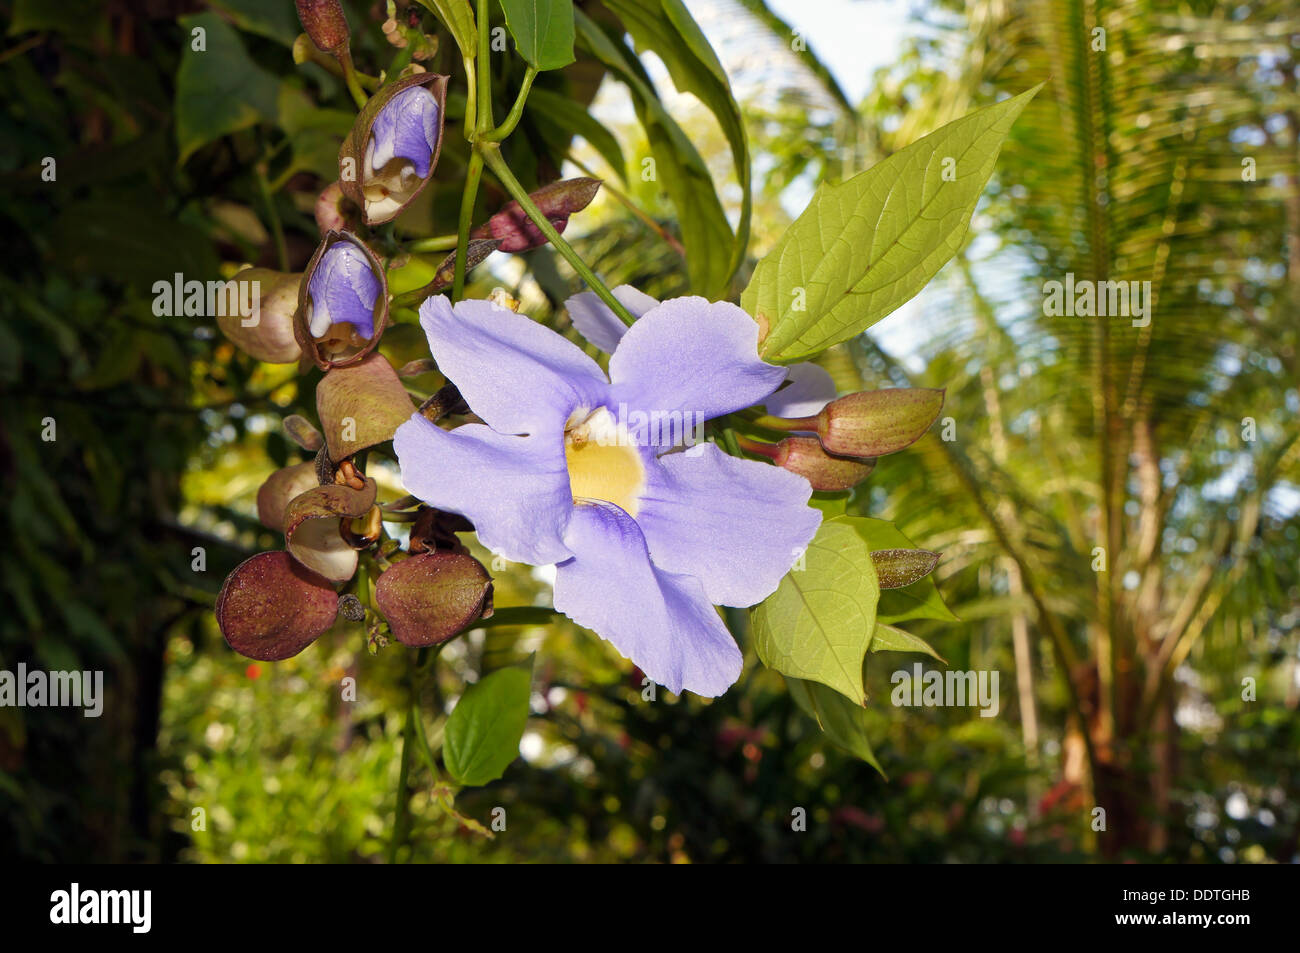 Bengal réveil vine ou sky flower (Thunbergia grandiflora) avec reservoir Banque D'Images